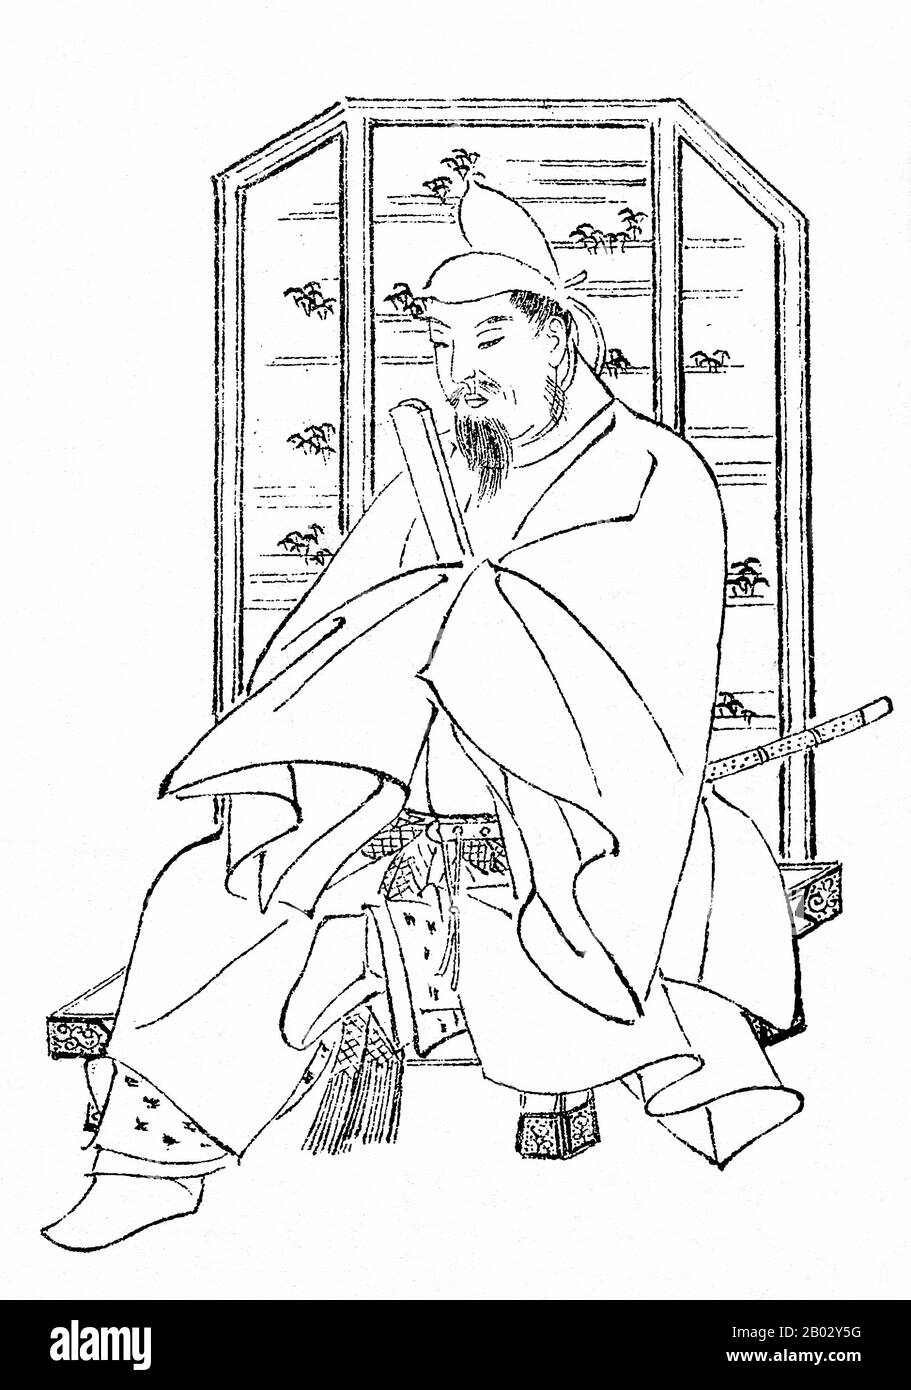 Sugawara no Michizane (1. August 845 - 26. März 903), auch Kan Shojo oder Kanke genannt, war ein Gelehrter, Dichter und Politiker der Heian-Zeit Japans. Er gilt insbesondere in der chinesischen Dichtung als versierter Dichter und wird heute als Gott des Lernens, Tenman-Tenjin, oft verkürzt zu Tenjin, verehrt. Er wurde in den 890er Jahren zum Botschafter in China ernannt, trat aber stattdessen 894 wegen des Niedergangs der Tang-Dynastie zur Abschaffung der kaiserlichen Botschaften nach China aus. Stockfoto